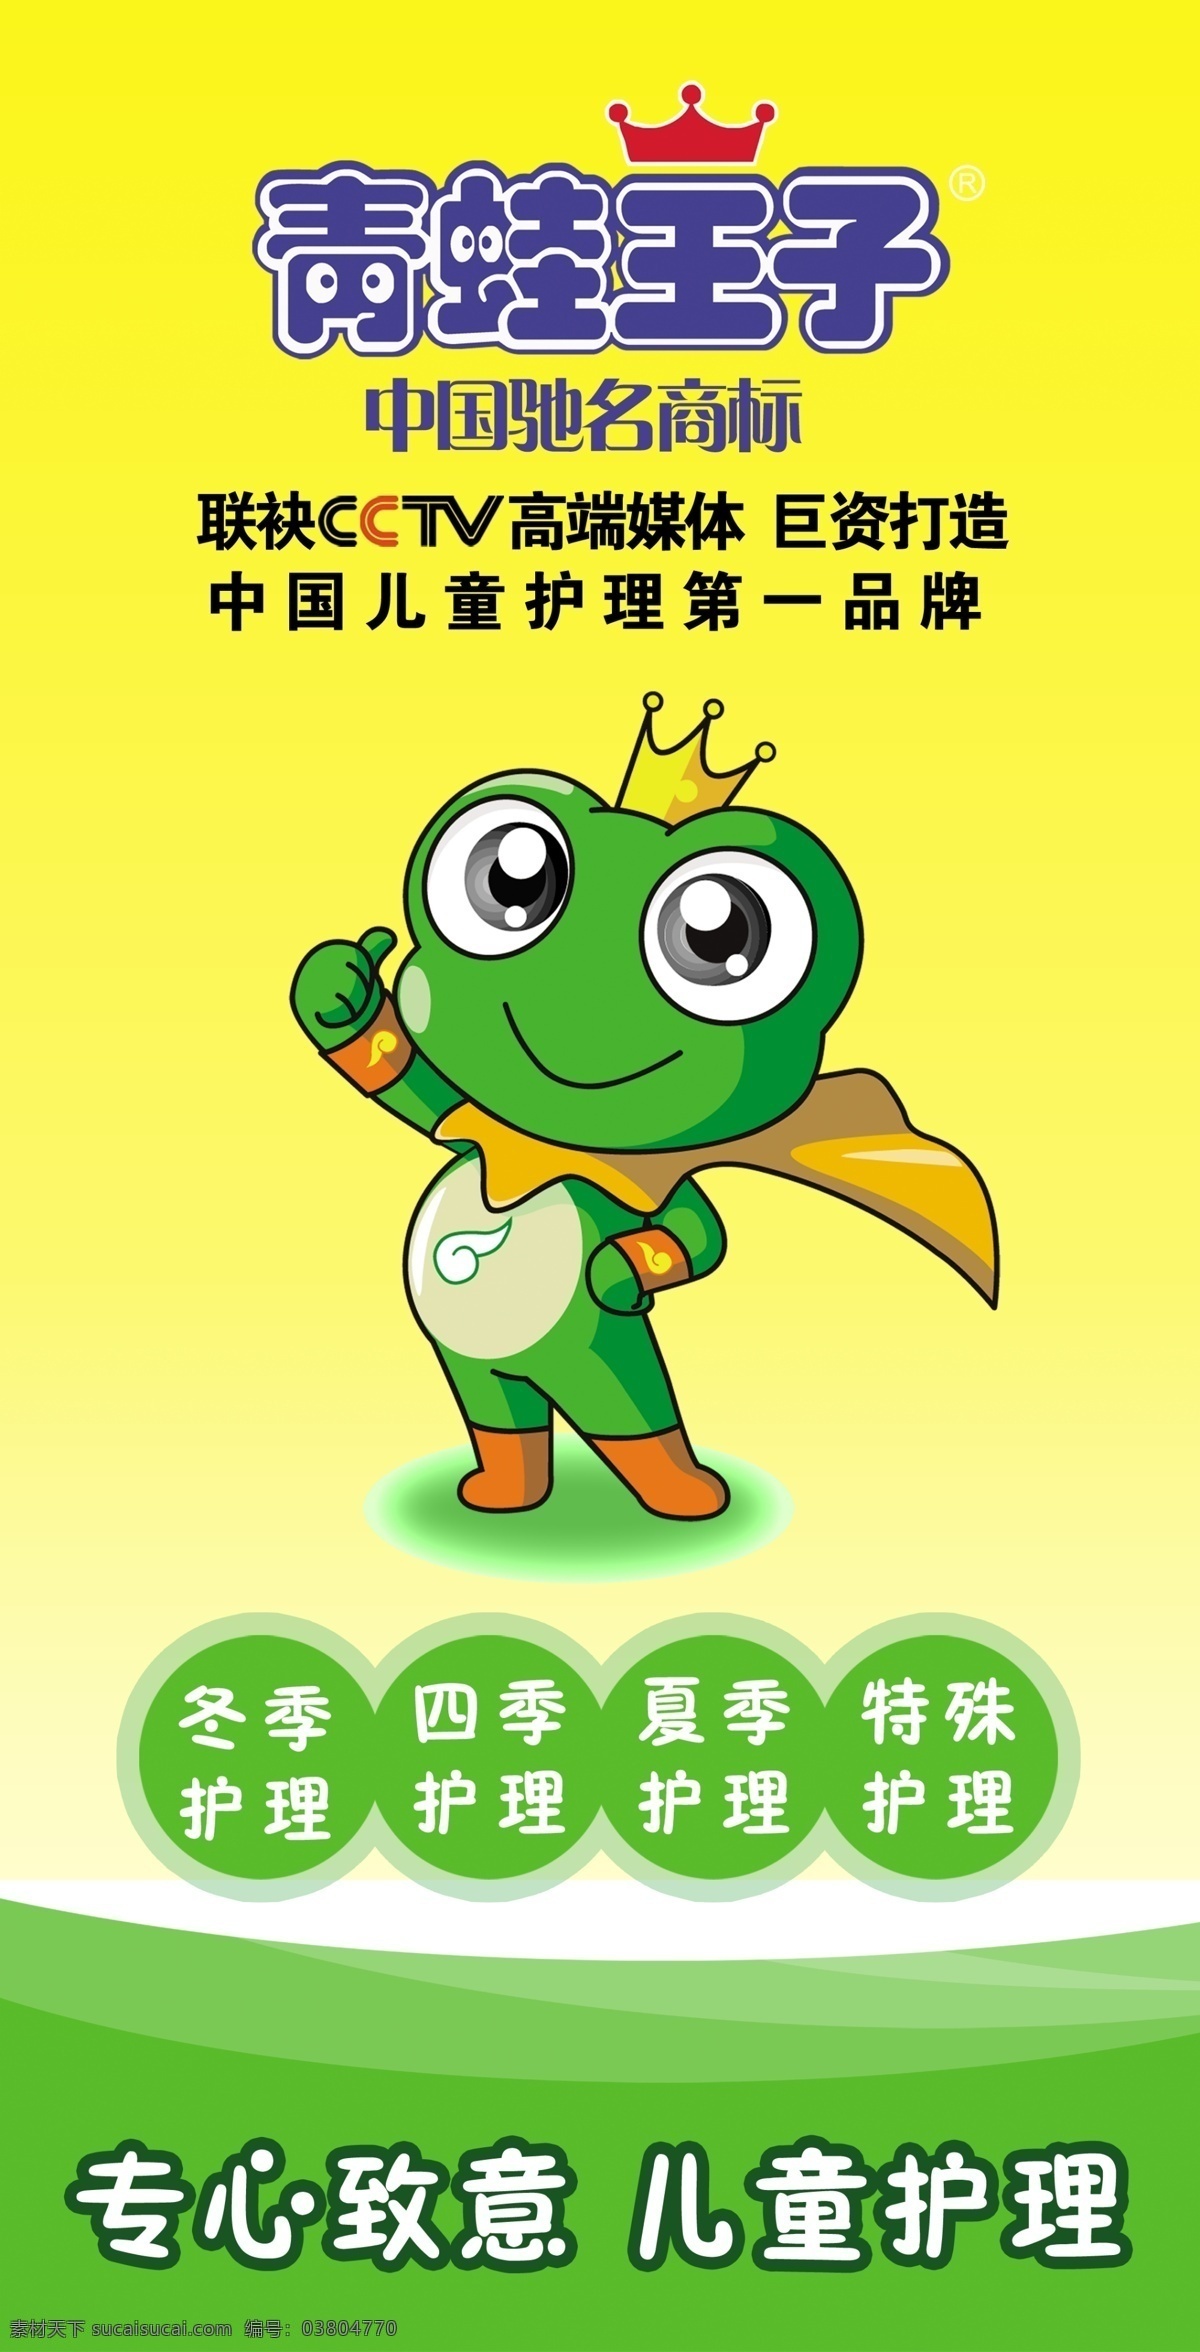 青蛙王子 模版下载 青蛙王子标志 青蛙 展板 化妆品海报